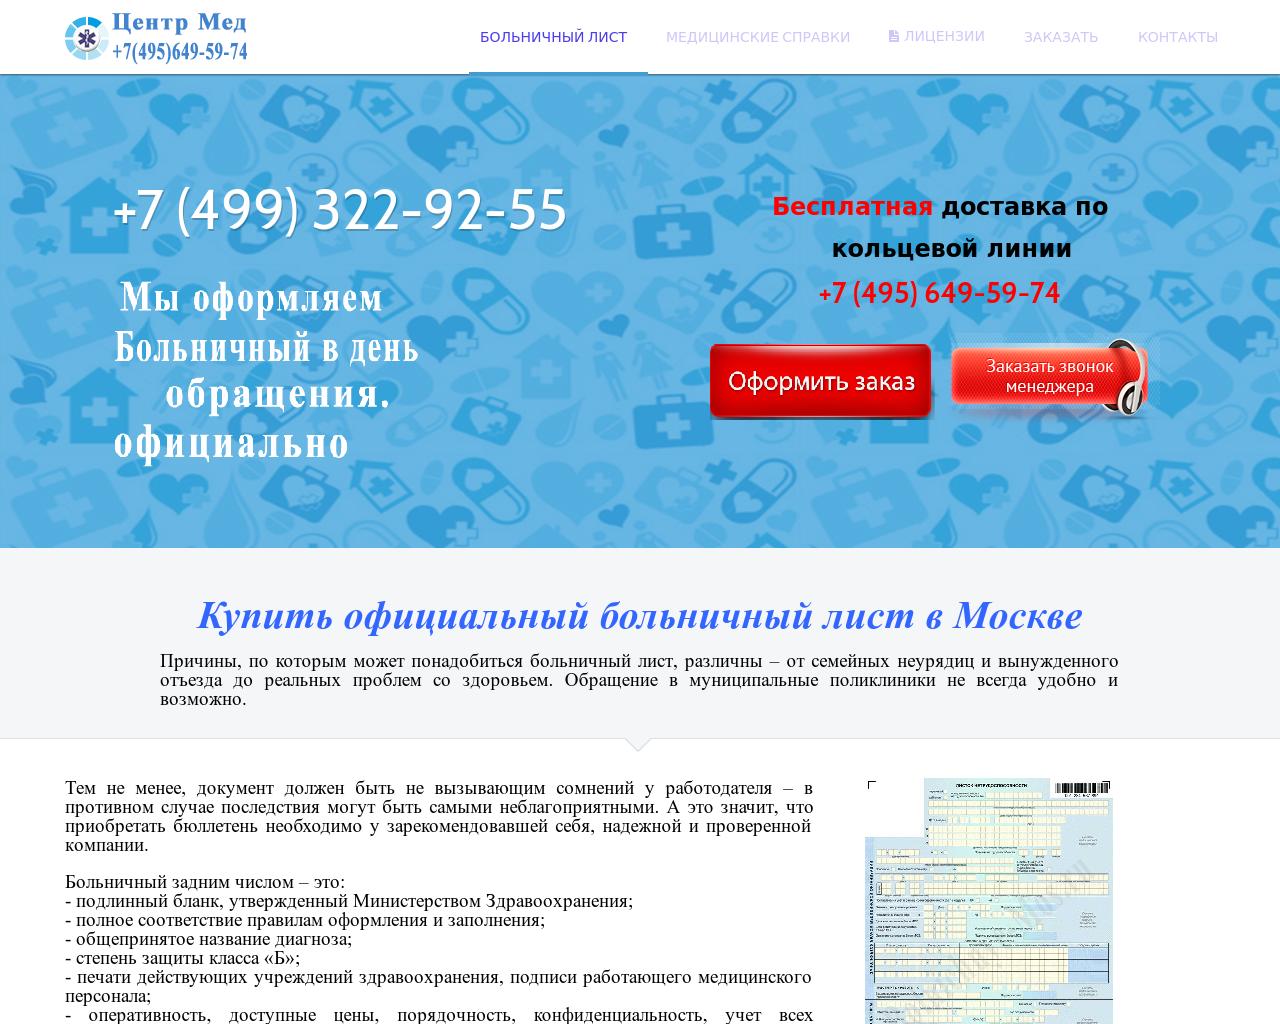 Изображение сайта marmed.ru в разрешении 1280x1024